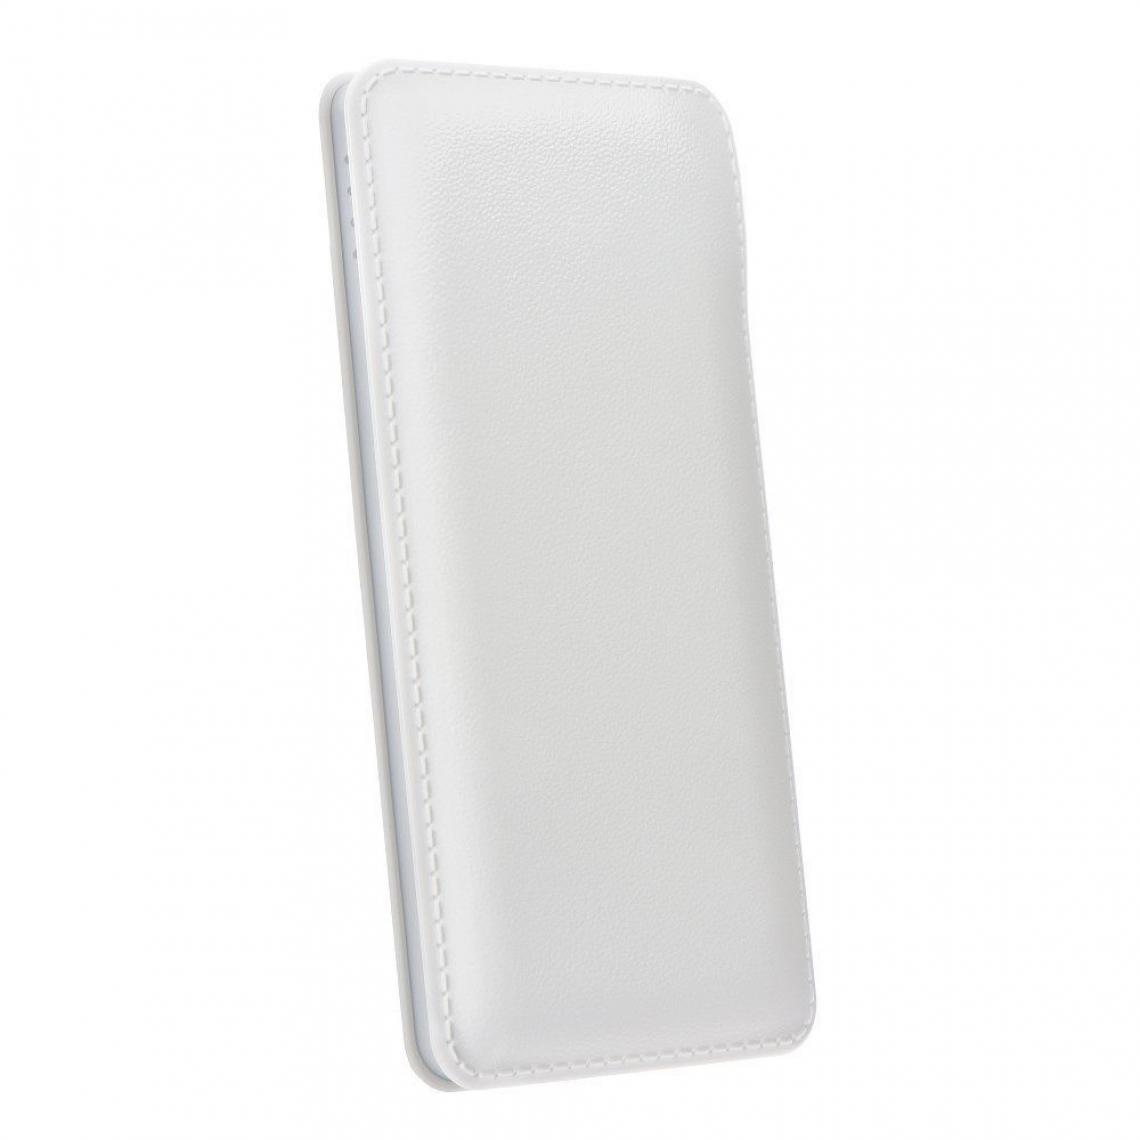 Ozzzo - Chargeur batterie externe 10000mAh powerbank ozzzo blanc pour Apple iPhone SE 2020 - Autres accessoires smartphone